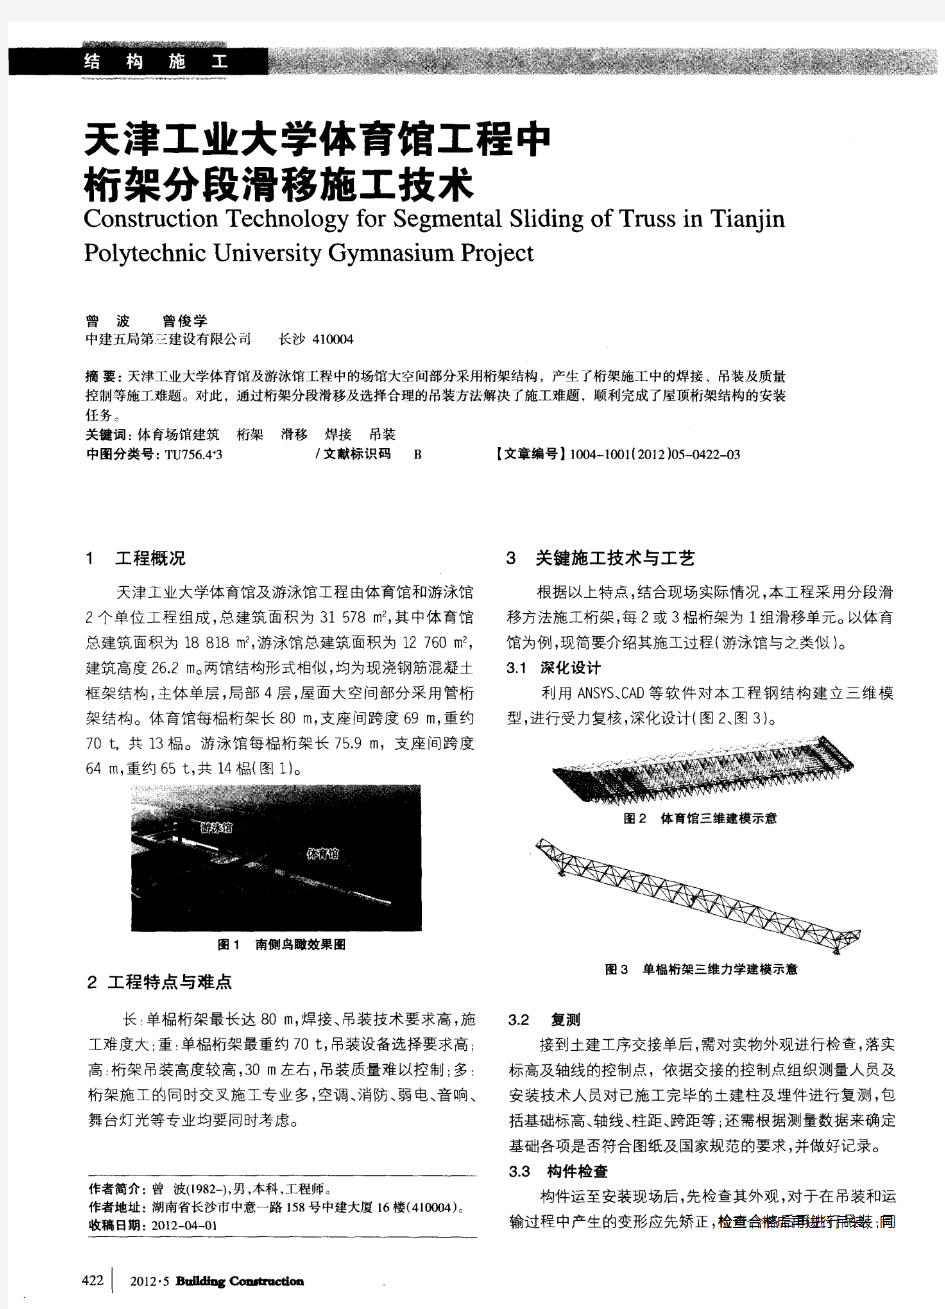 天津工业大学体育馆工程中桁架分段滑移施工技术